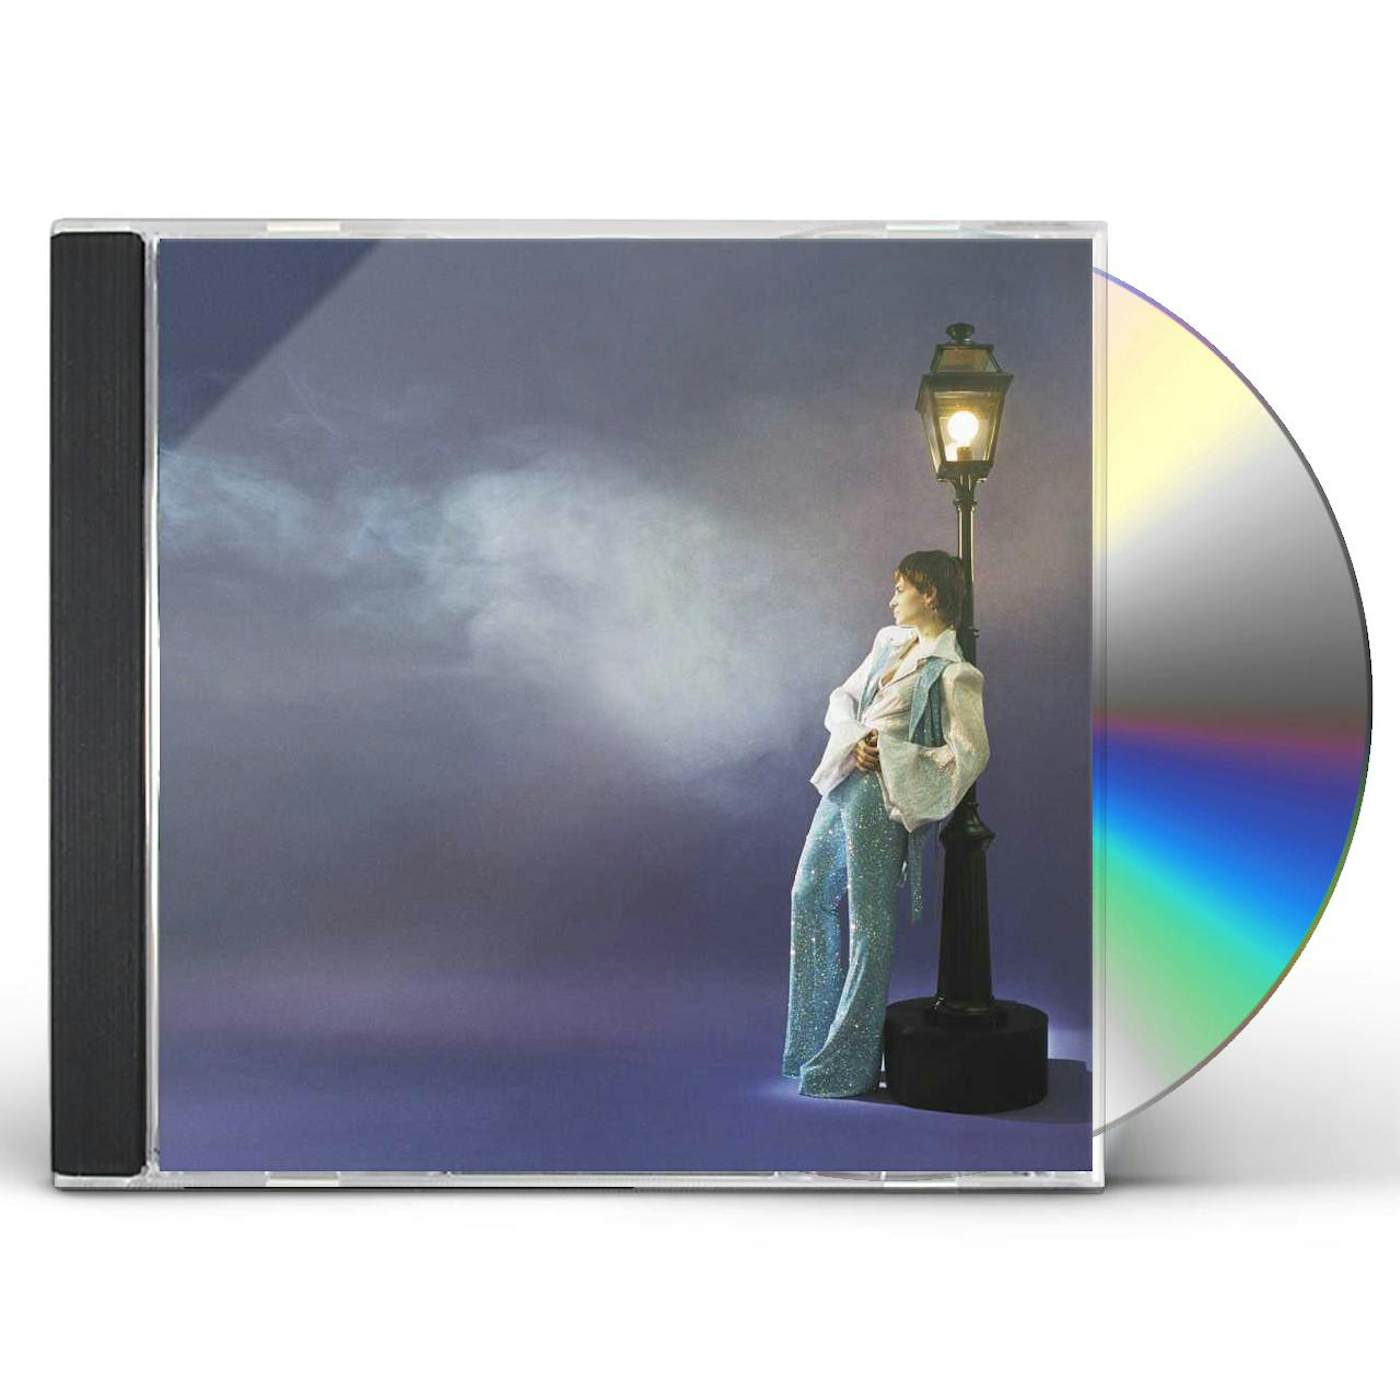 Christine and the Queens La vita nuova (EP) CD